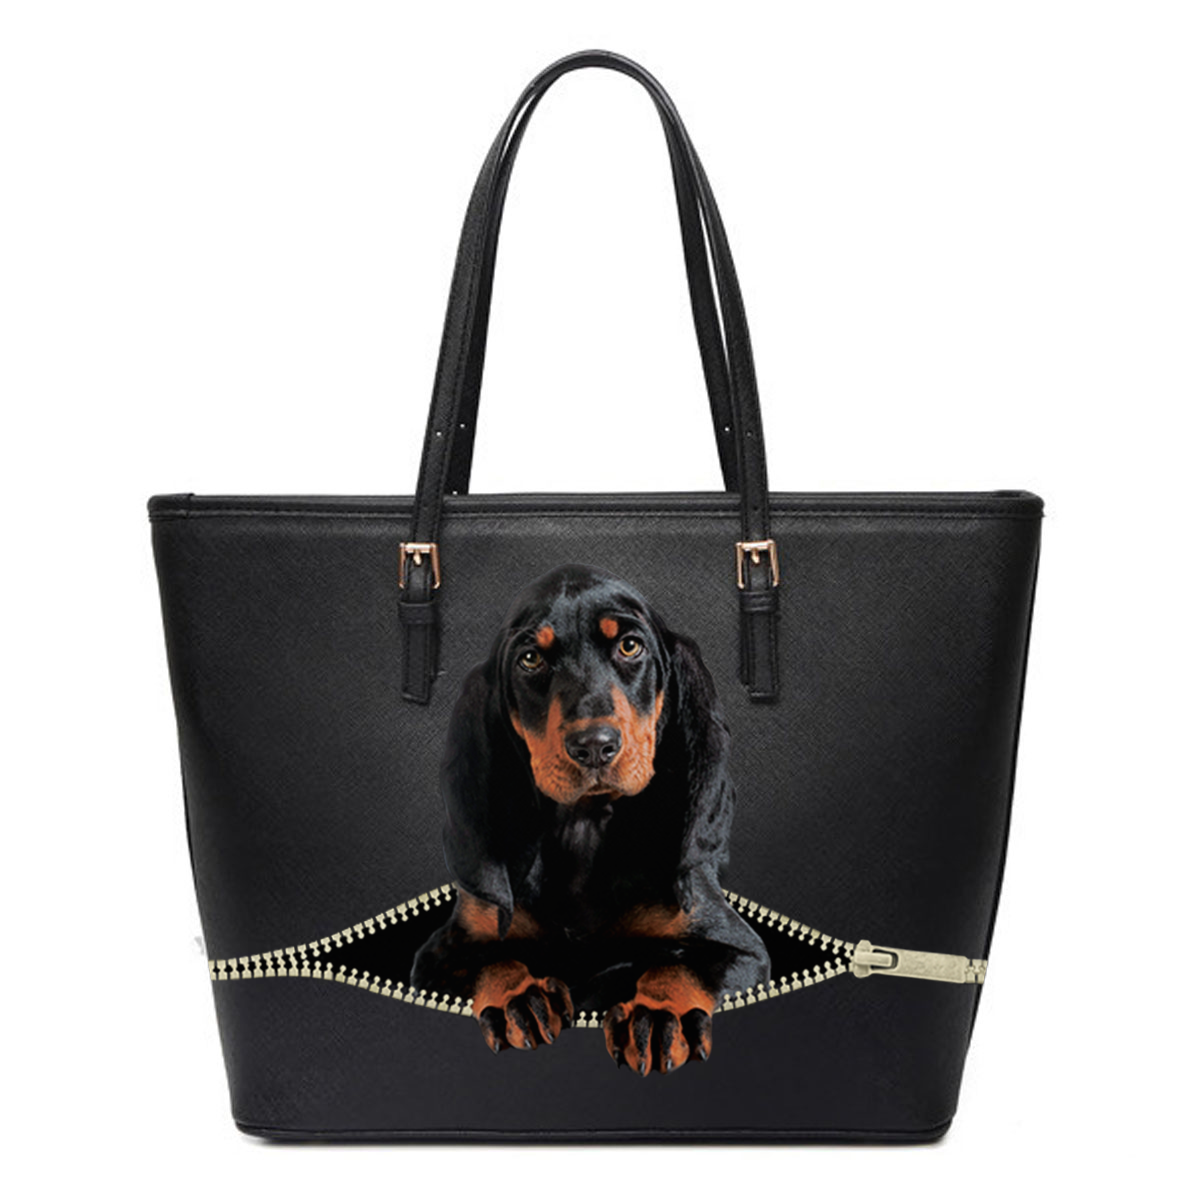 Coonhound Tote Bag V1